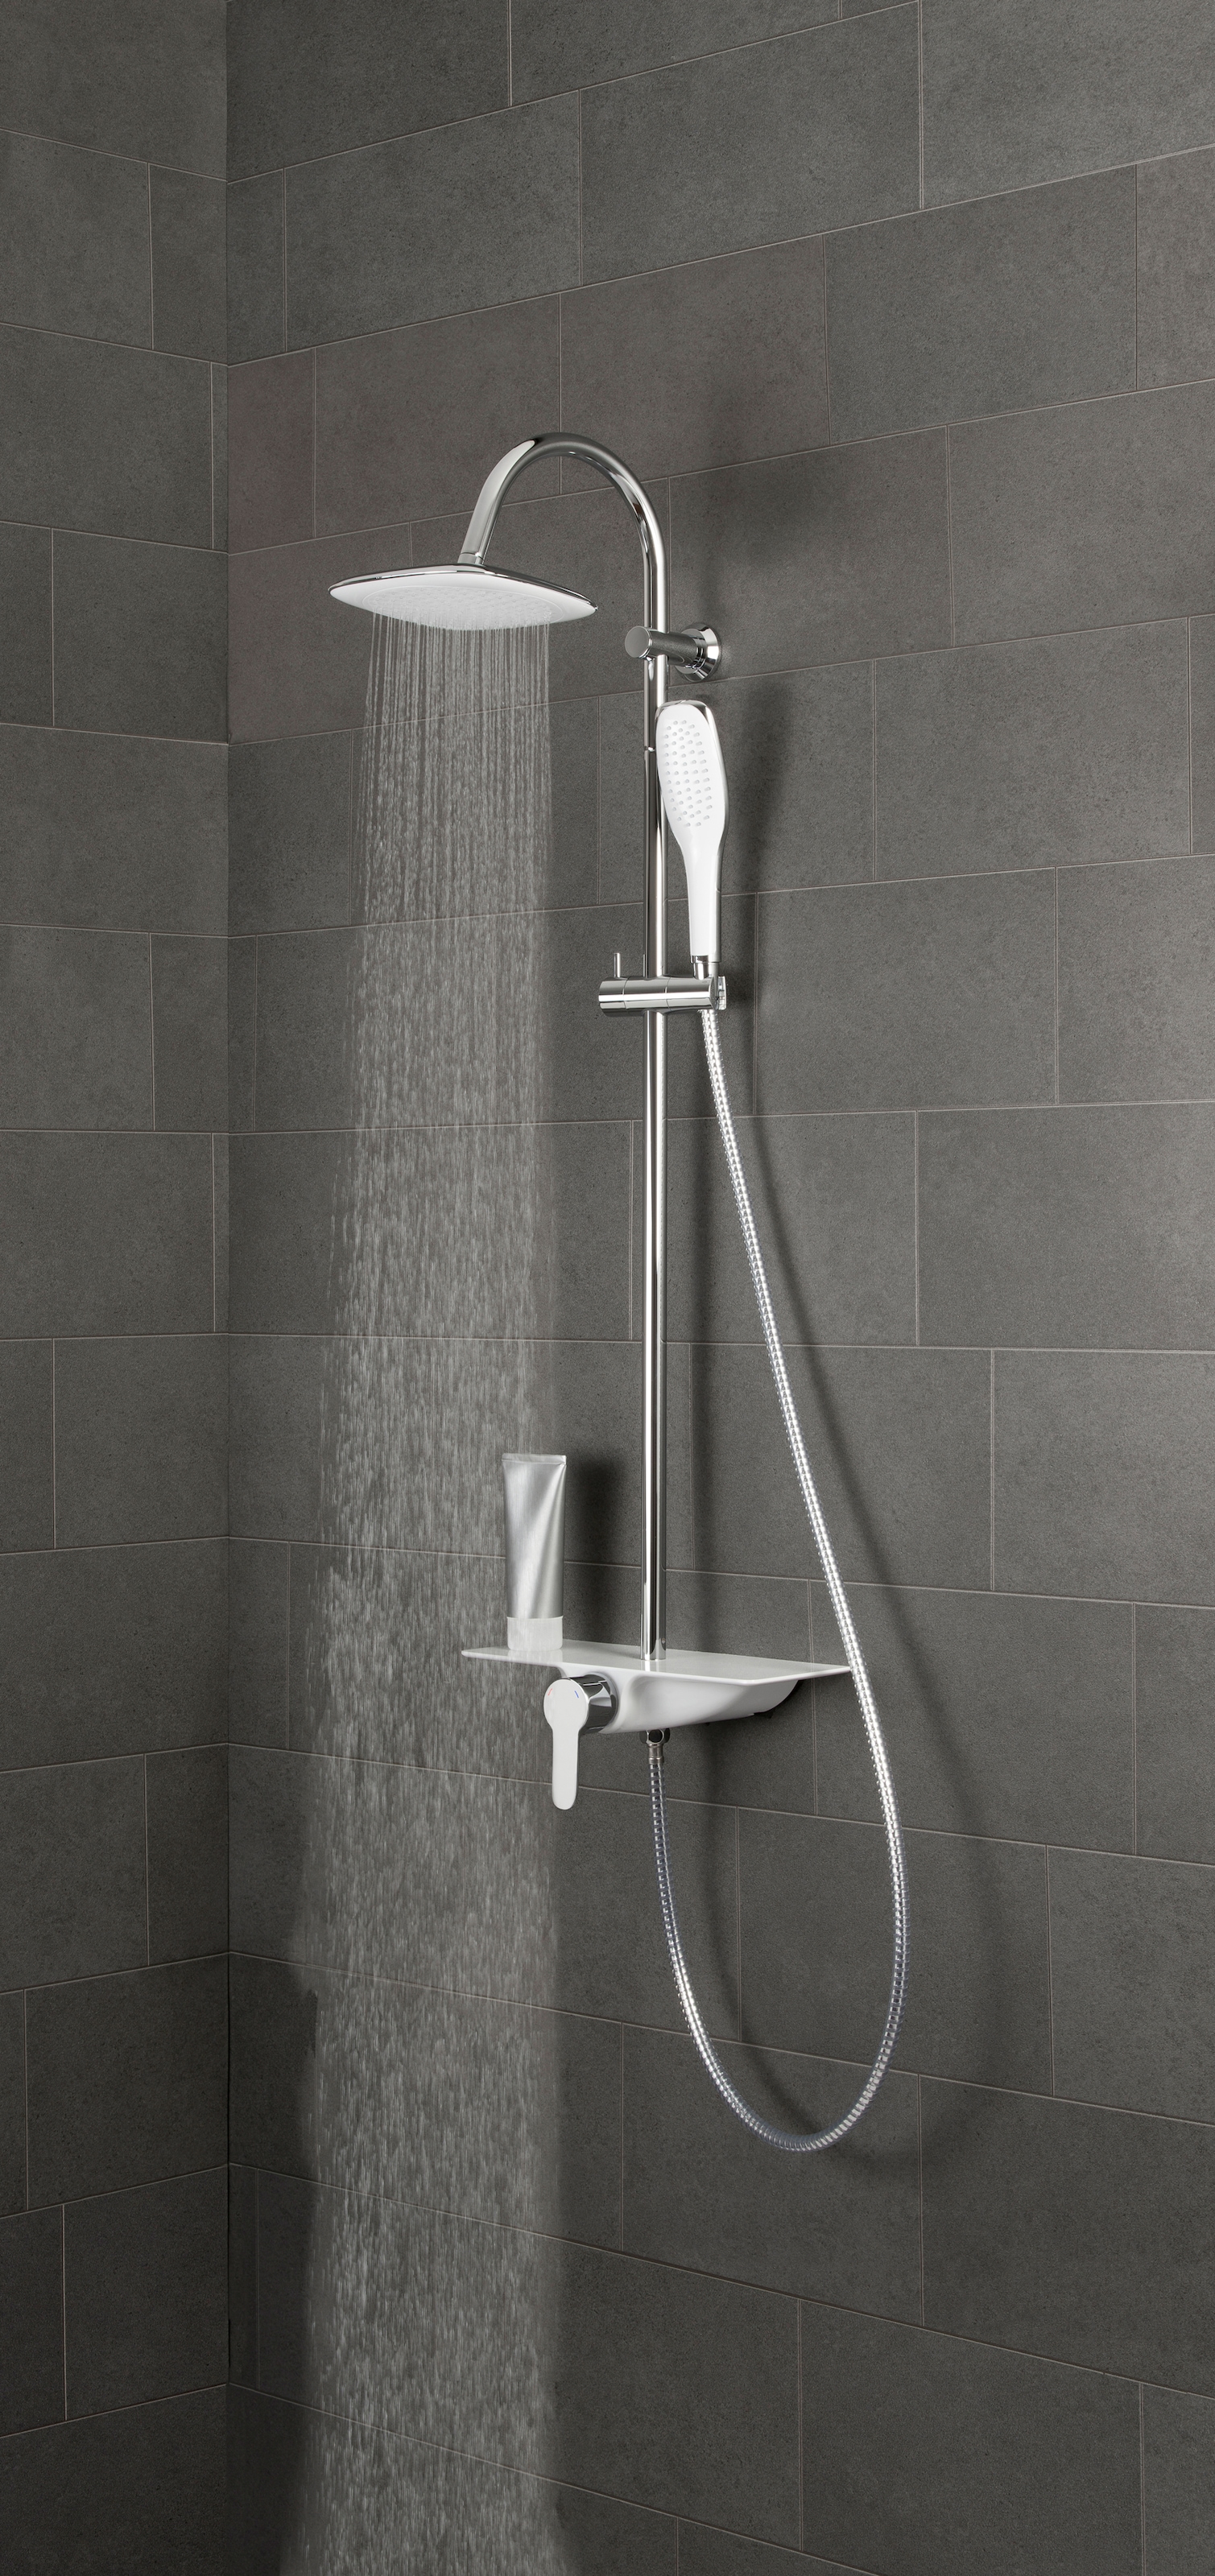 Schütte Brausegarnitur »Waterway«, Duschsystem mit Armatur und Regendusche, Chrom/Weiß